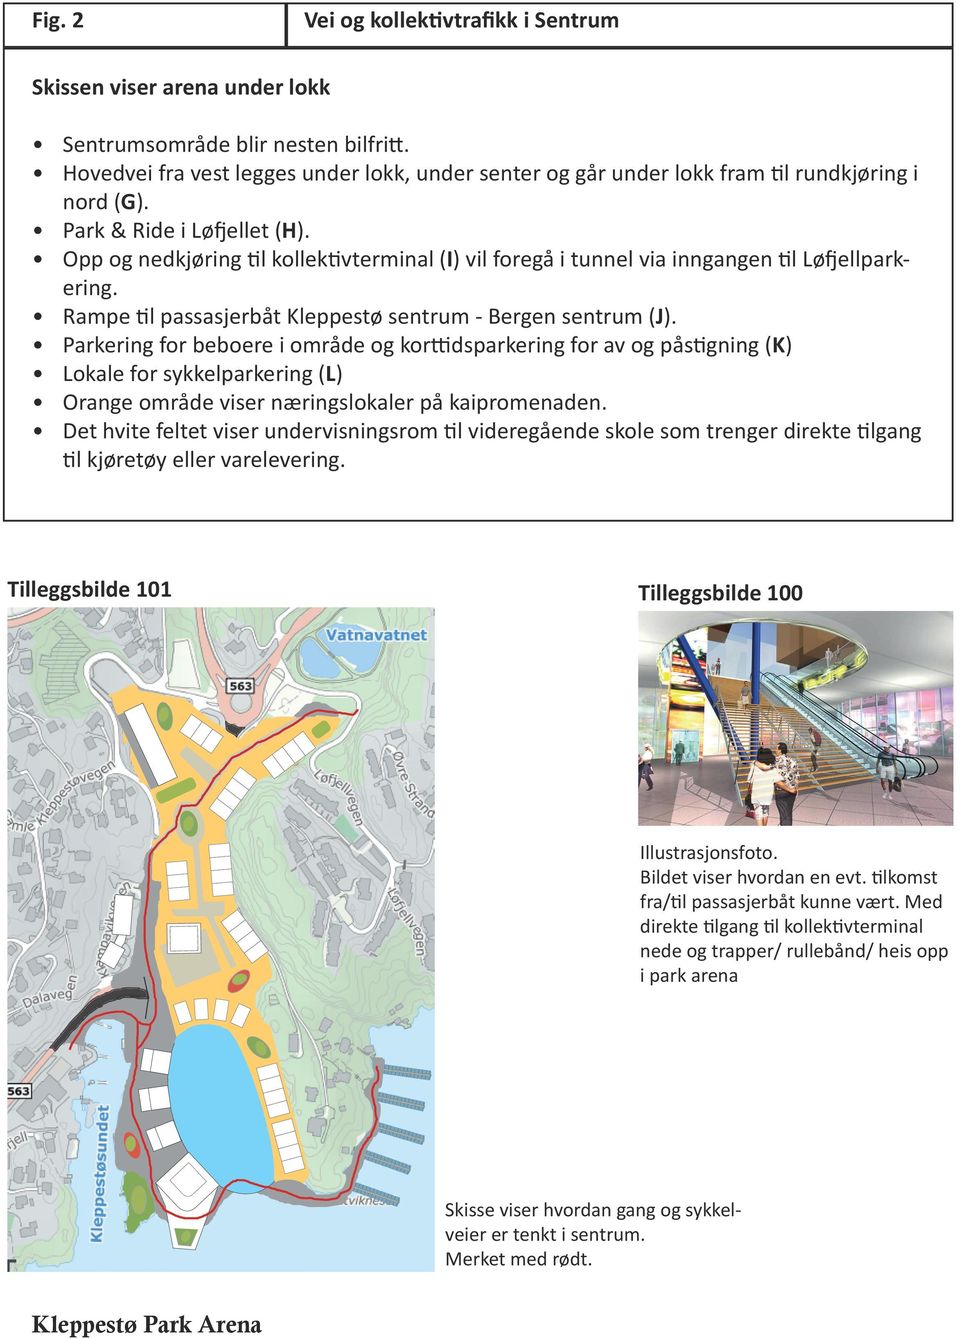 Opp og nedkjøring til kollektivterminal (I) vil foregå i tunnel via inngangen til Løfjellparkering. Rampe til passasjerbåt Kleppestø sentrum - Bergen sentrum (J).